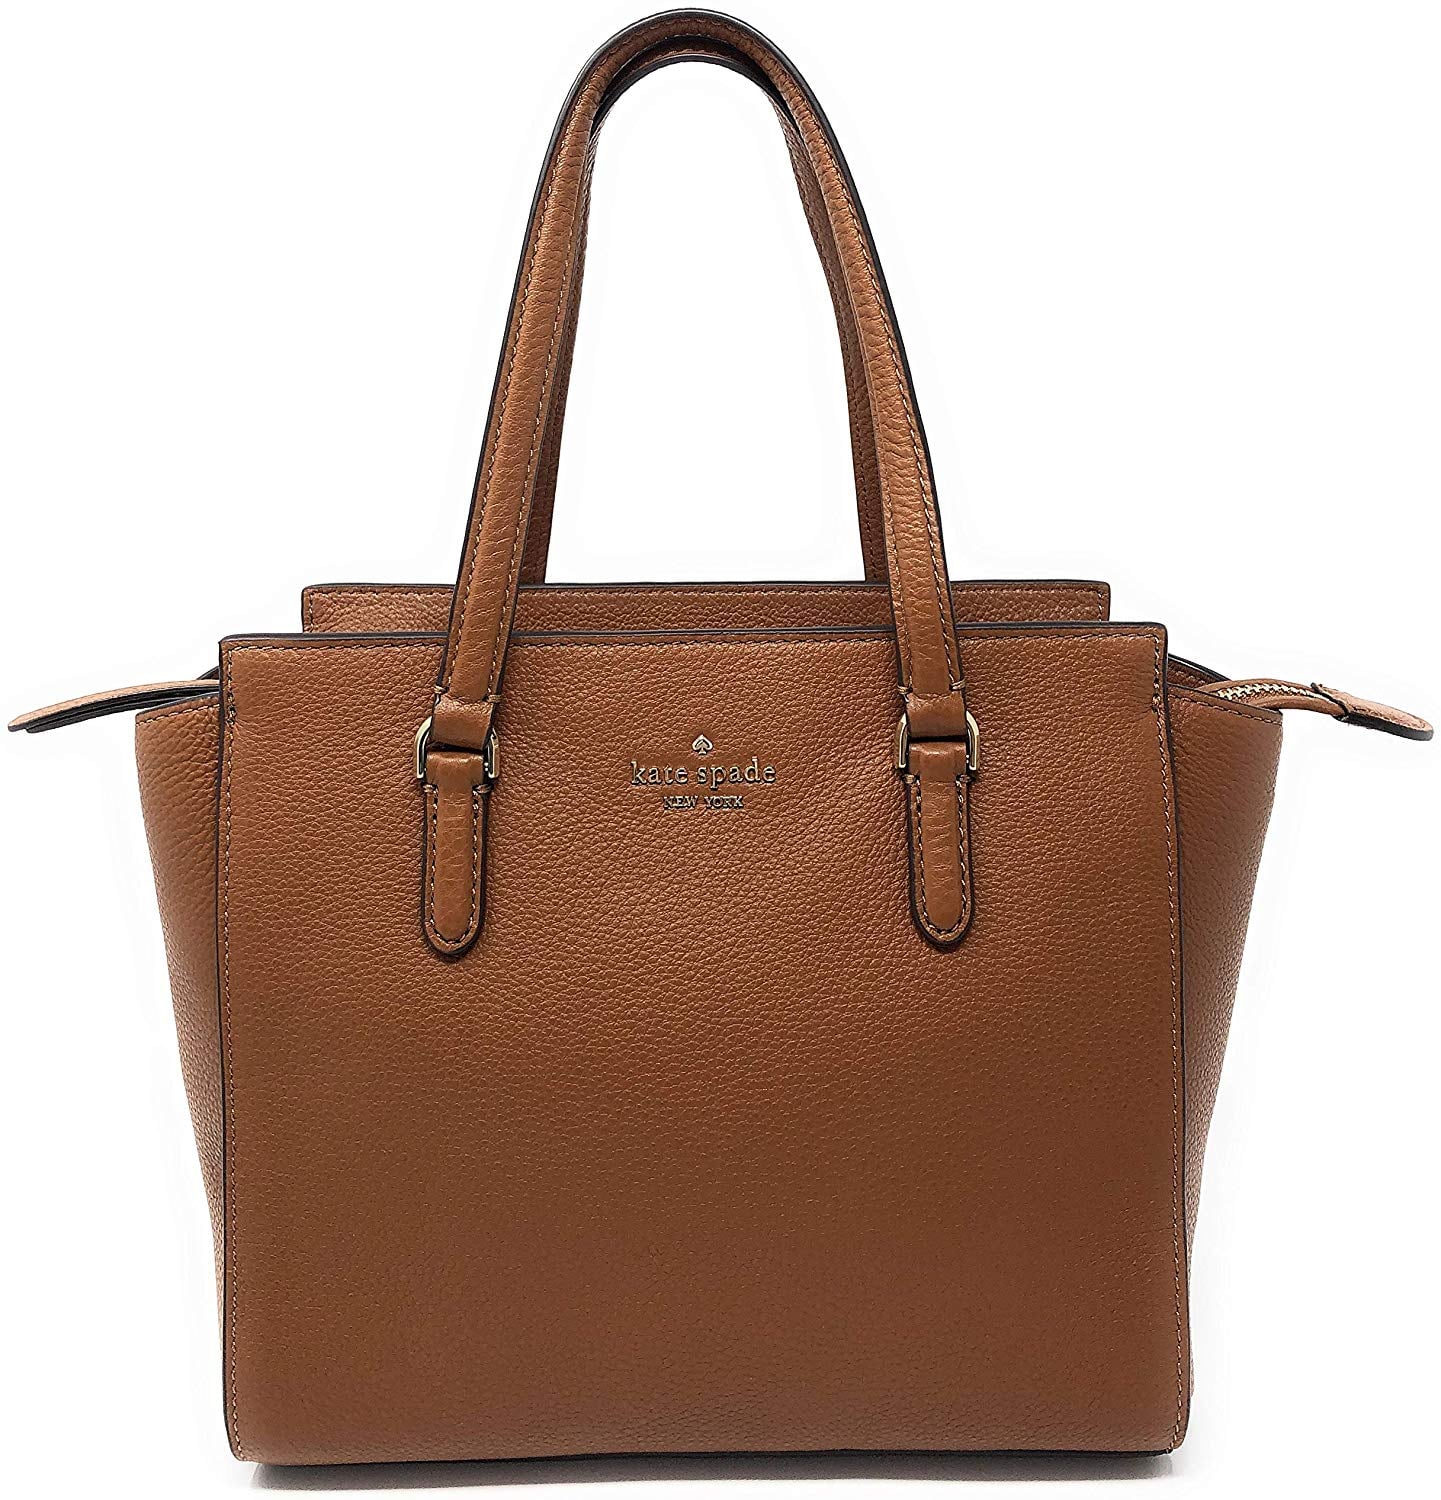 Kate Spade HOT PINK domed LARGE top handle satchel purse handbag shoulder  tote | eBay